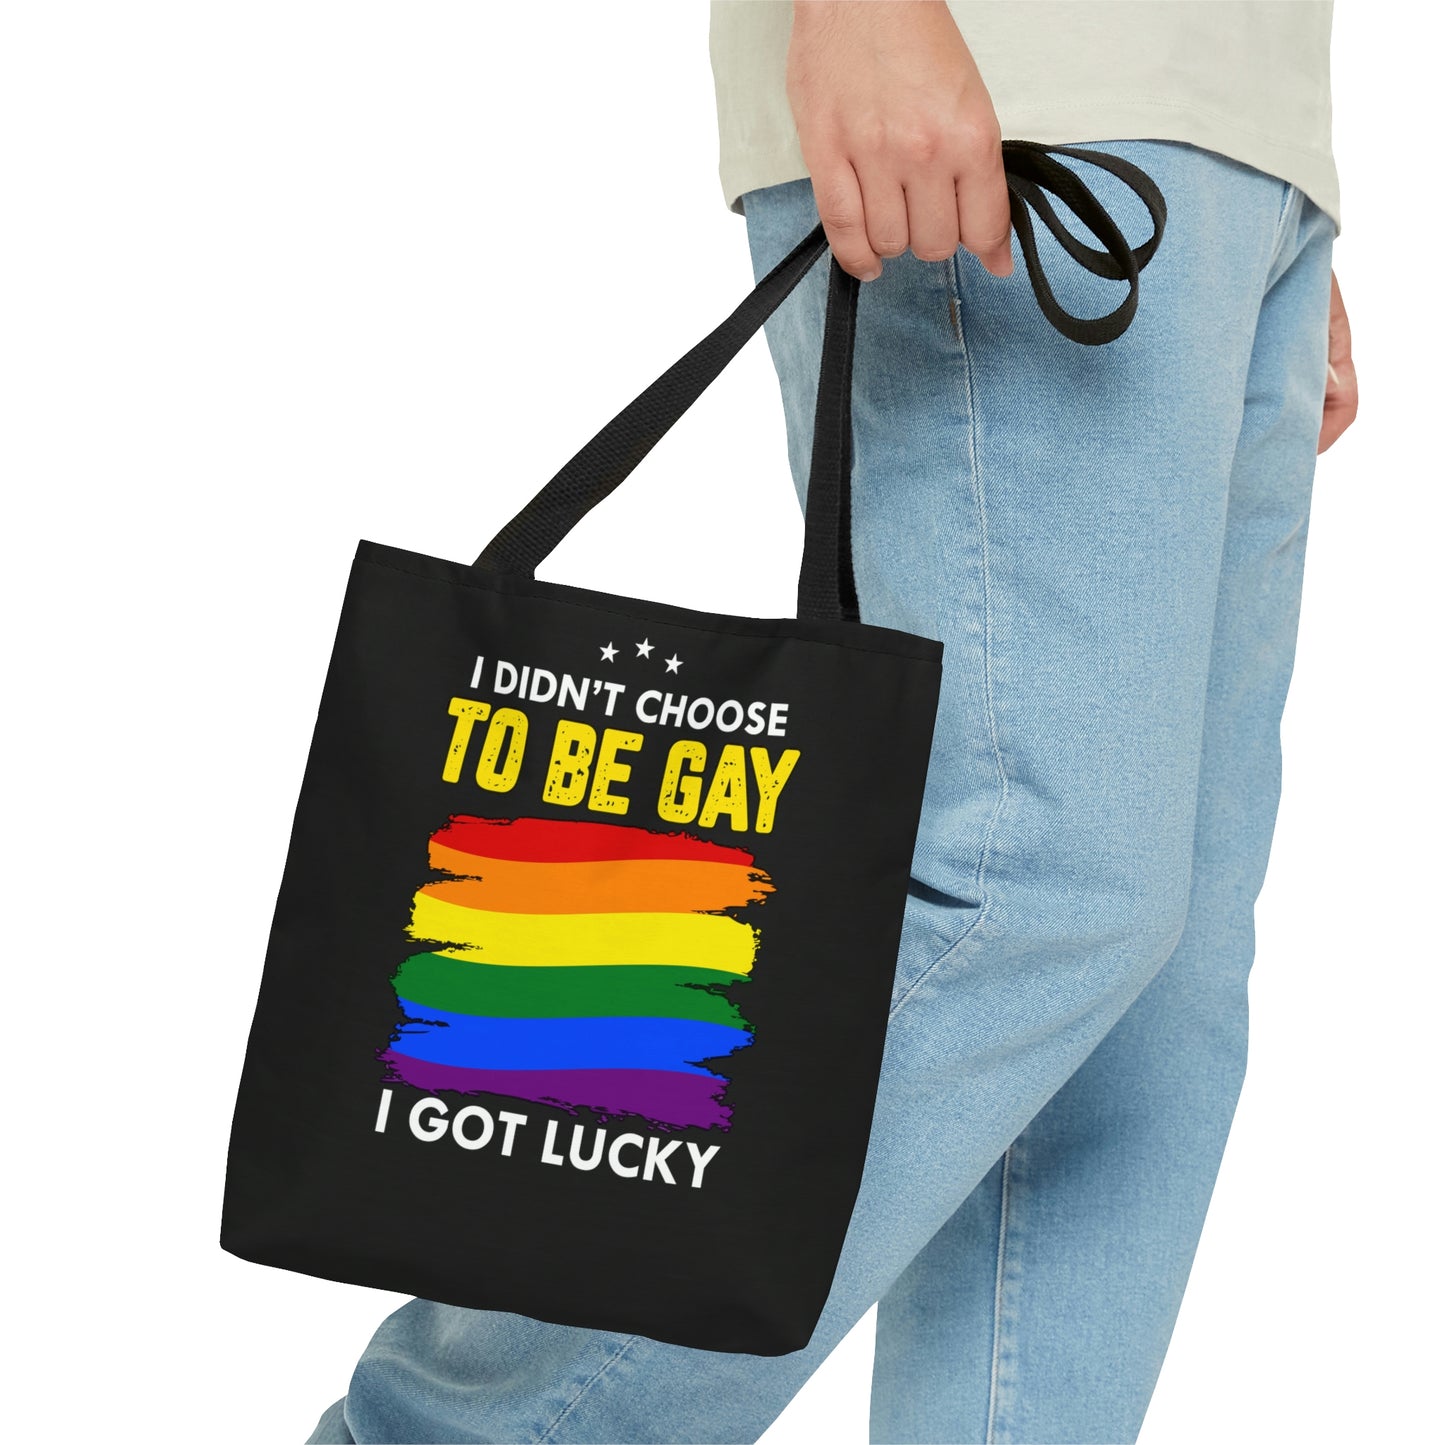 To Be Gay Tote Bag (AOP)